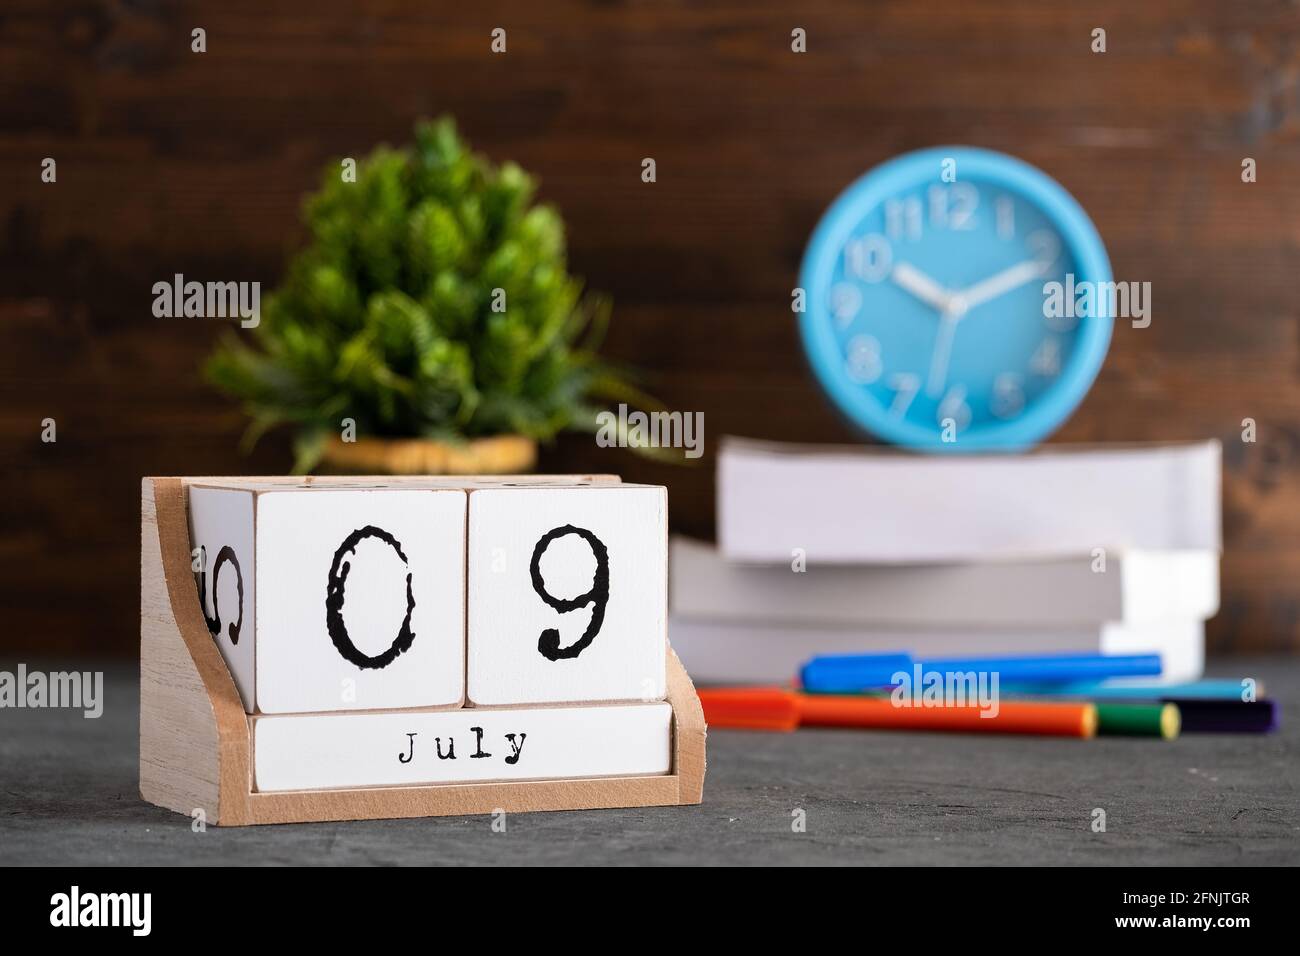 09ème juillet. Juillet 09 calendrier cube en bois avec des objets flous sur fond. Banque D'Images